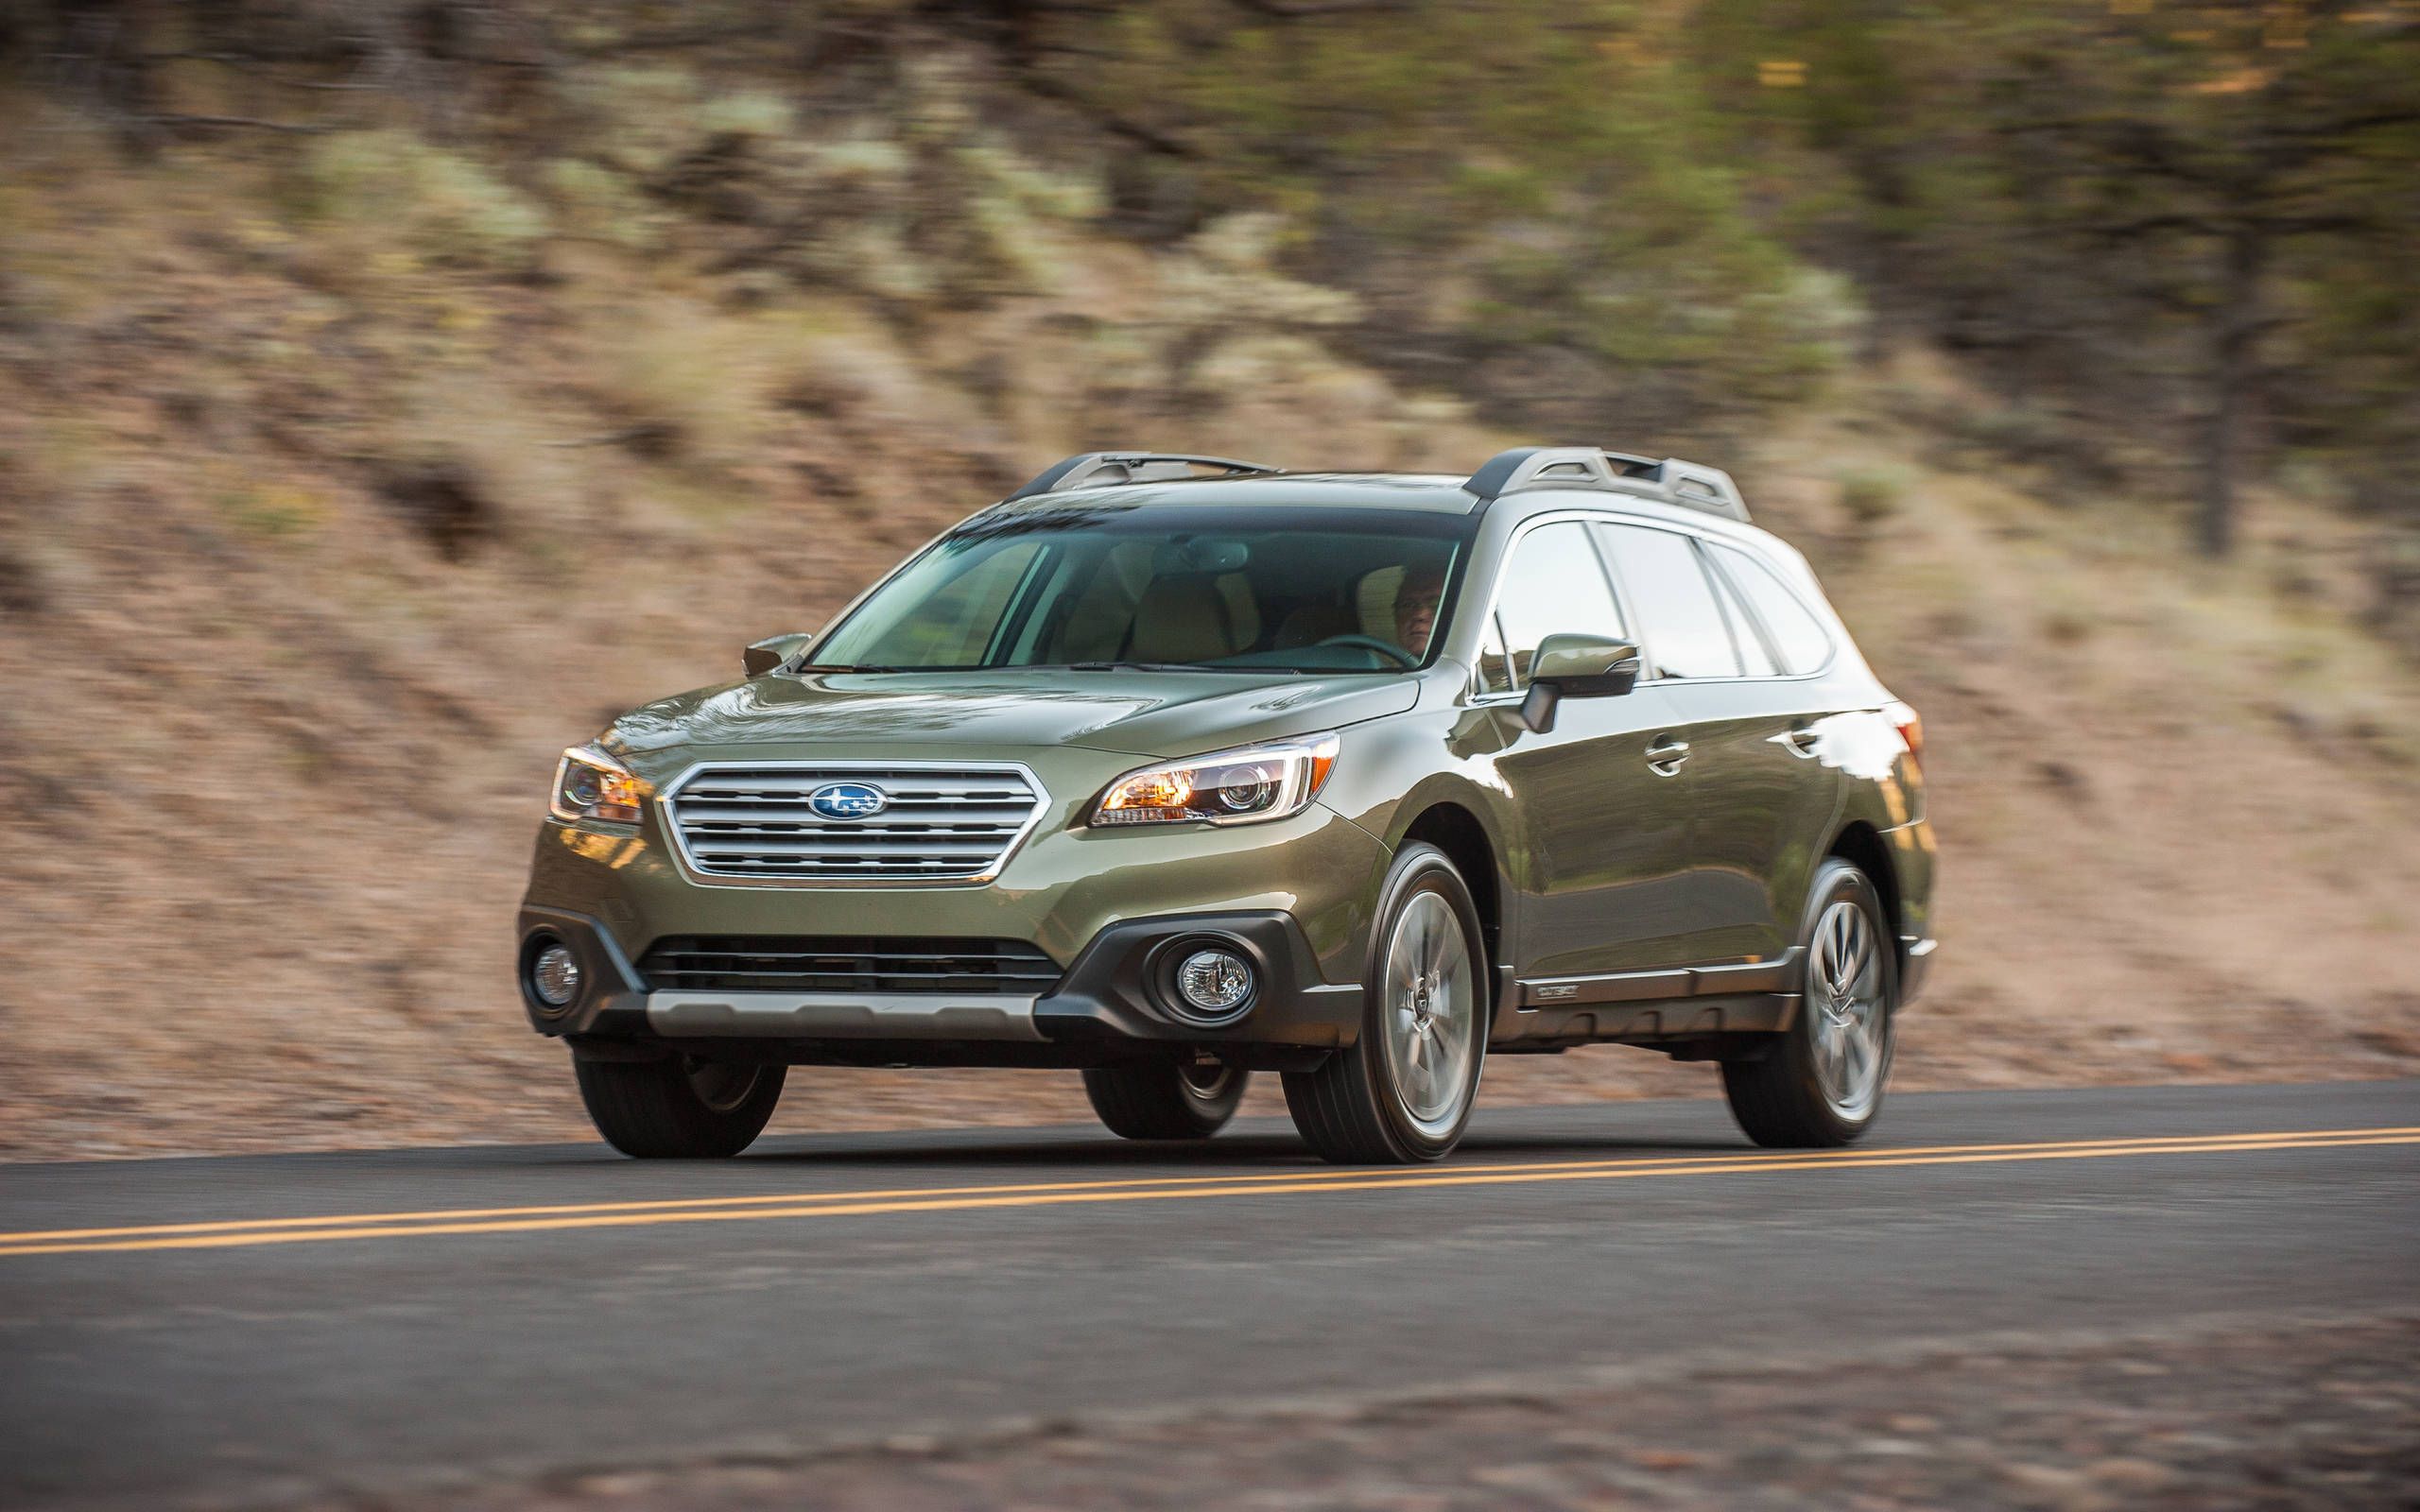 2015 Subaru Outback 2.5i Premium review notes